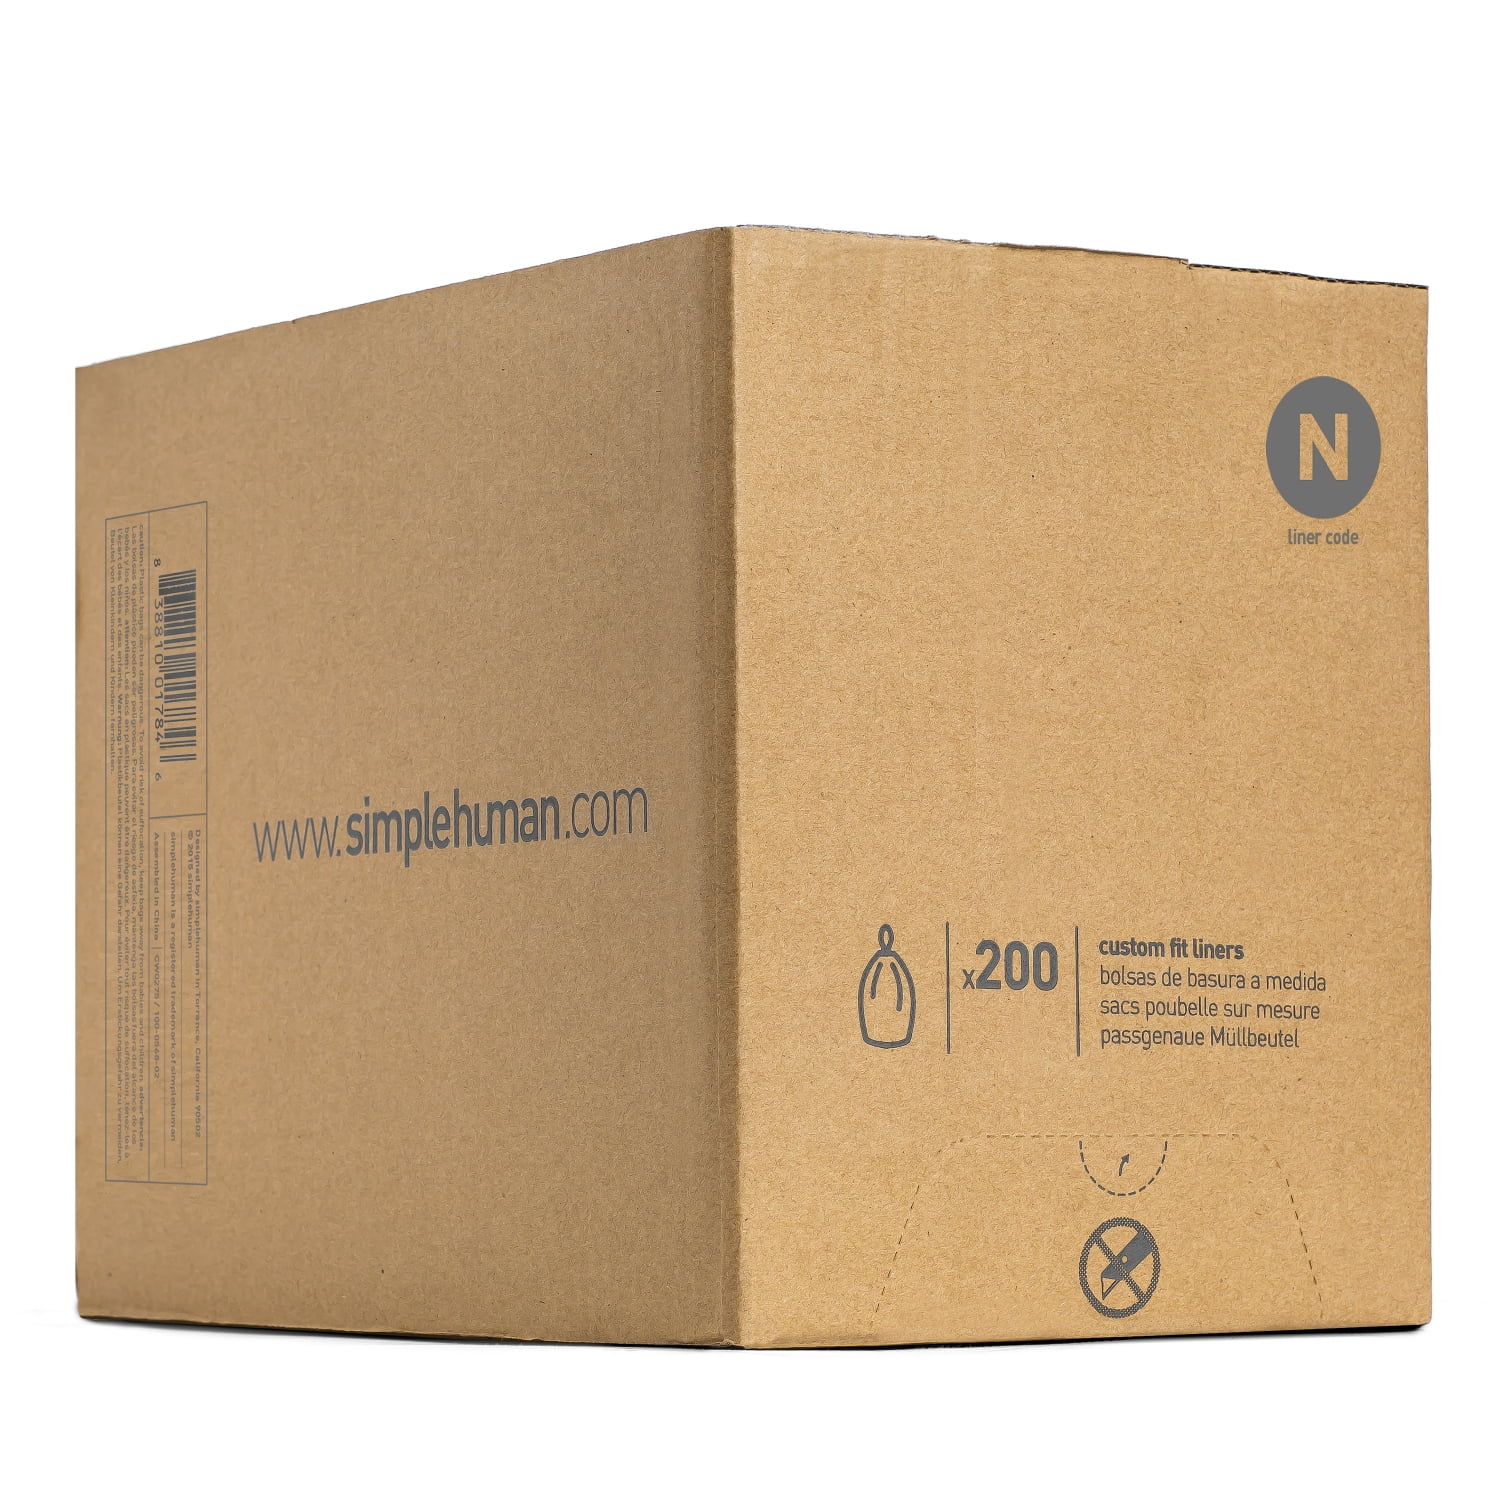 simplehuman Code K Genuine Custom Fit Drawstring Trash Bags in Dispenser  Packs, 60 Count, 35-45 Liter / 9.2-12 Gallon, White